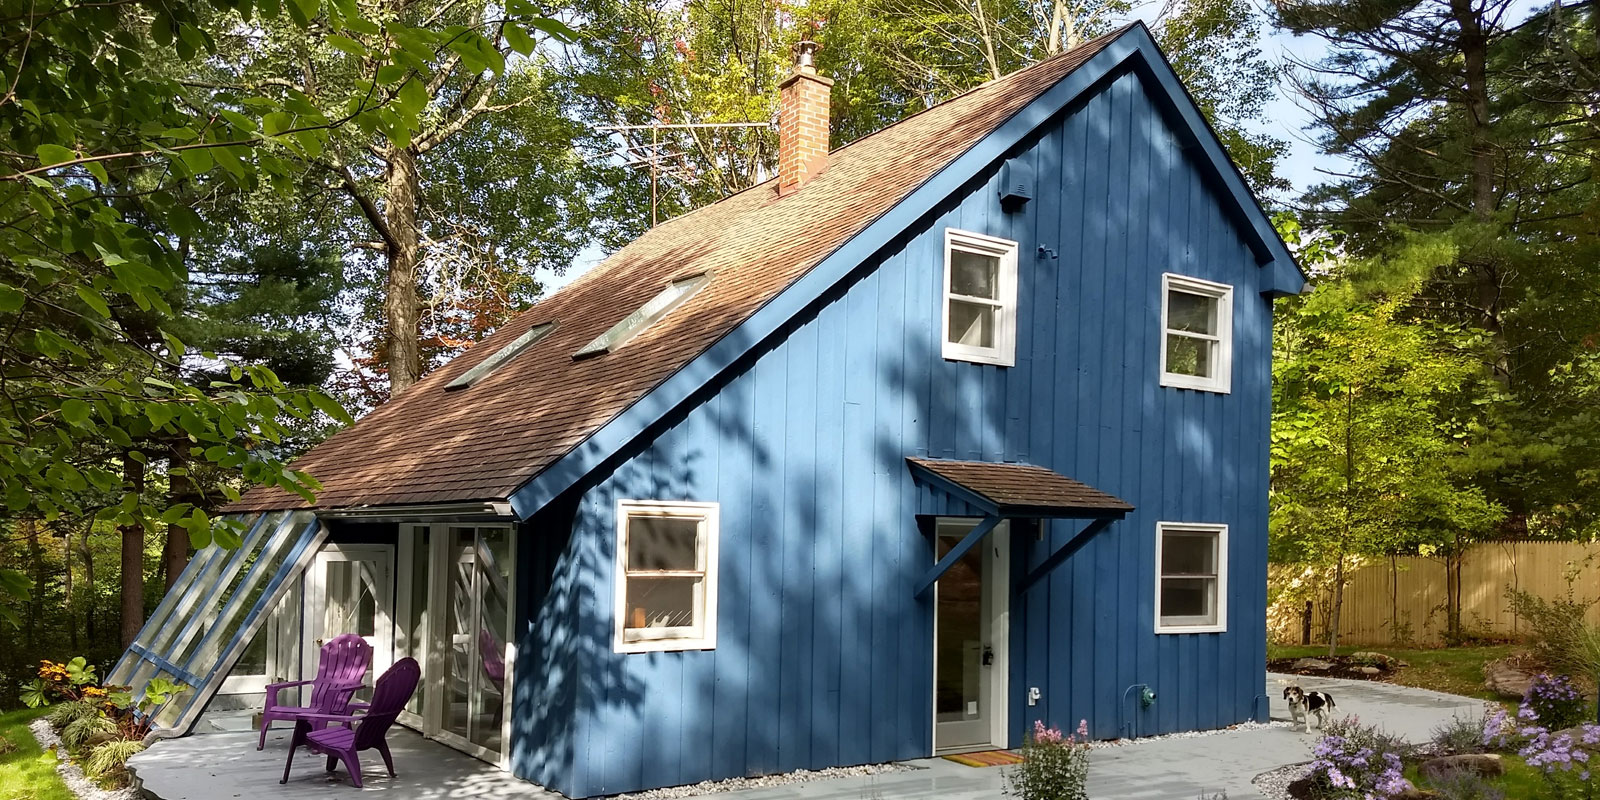 Blue house with angular shape